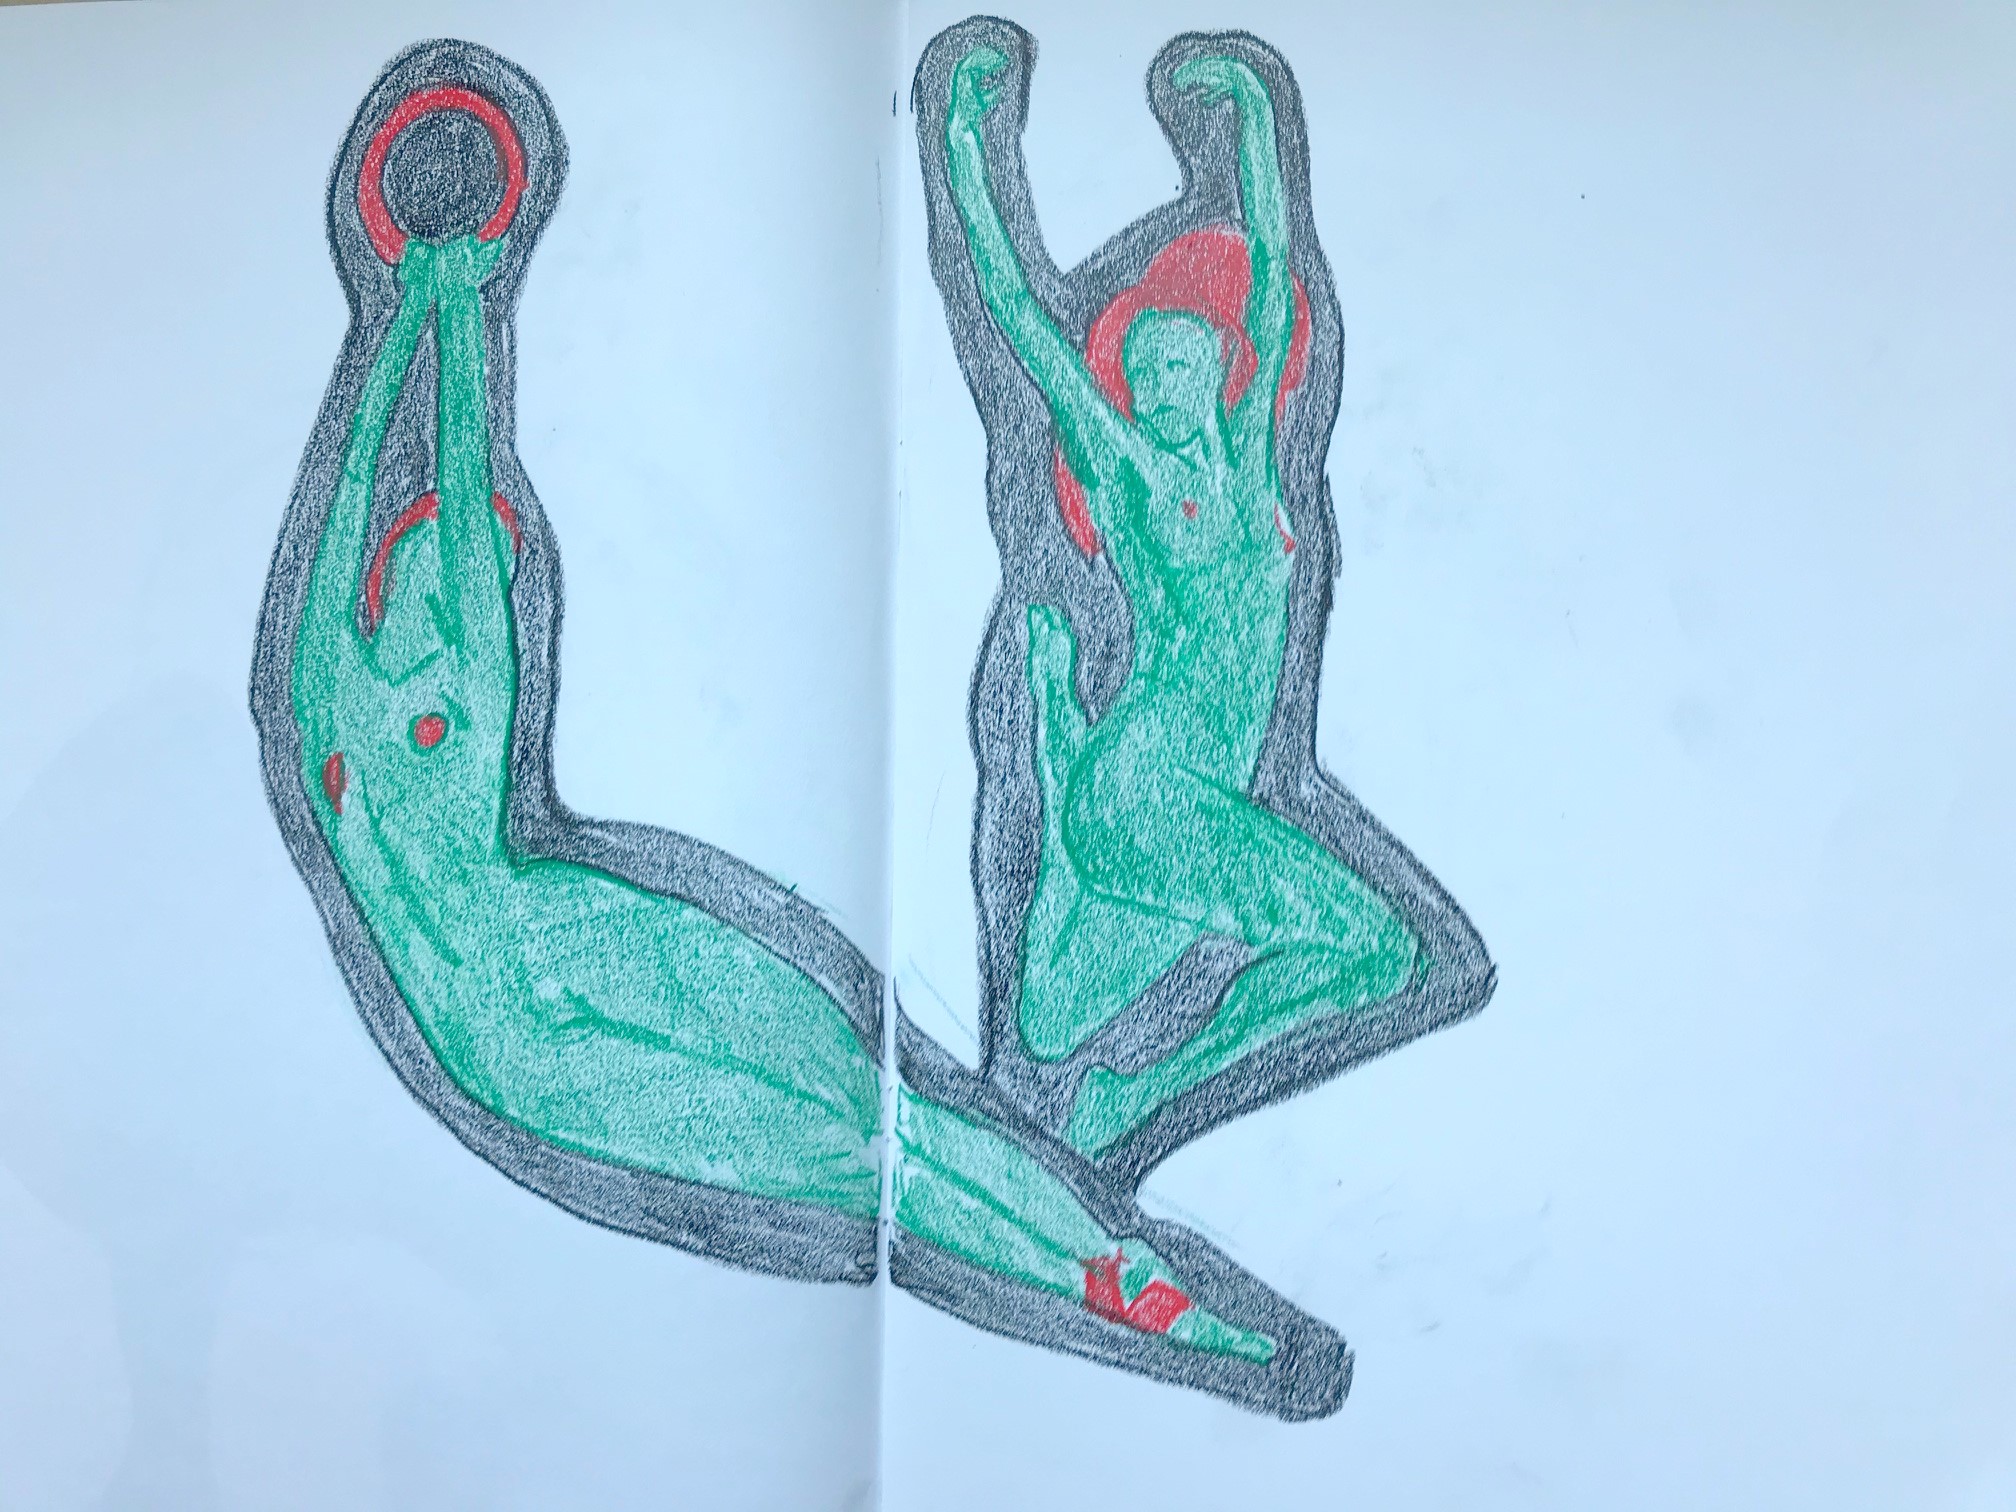  Dessin vert et rouge gymnastique  cours de dessin 